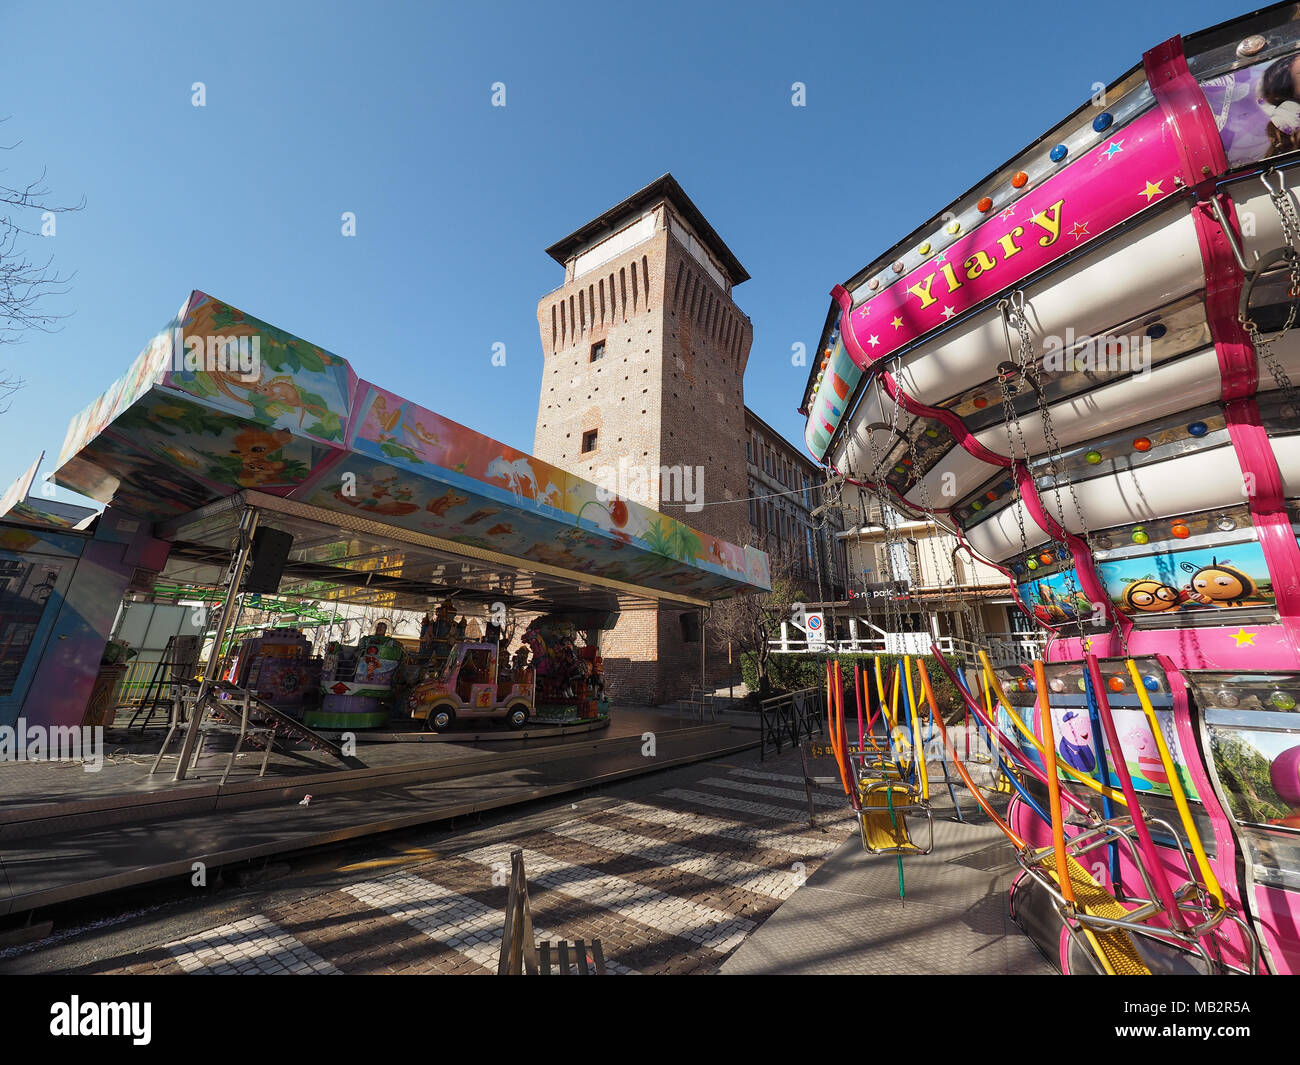 SETTIMO TORINESE, Italia - circa Febbraio 2018: giostre presso il parco di divertimenti (chiamato Luna Park in italiano) Foto Stock